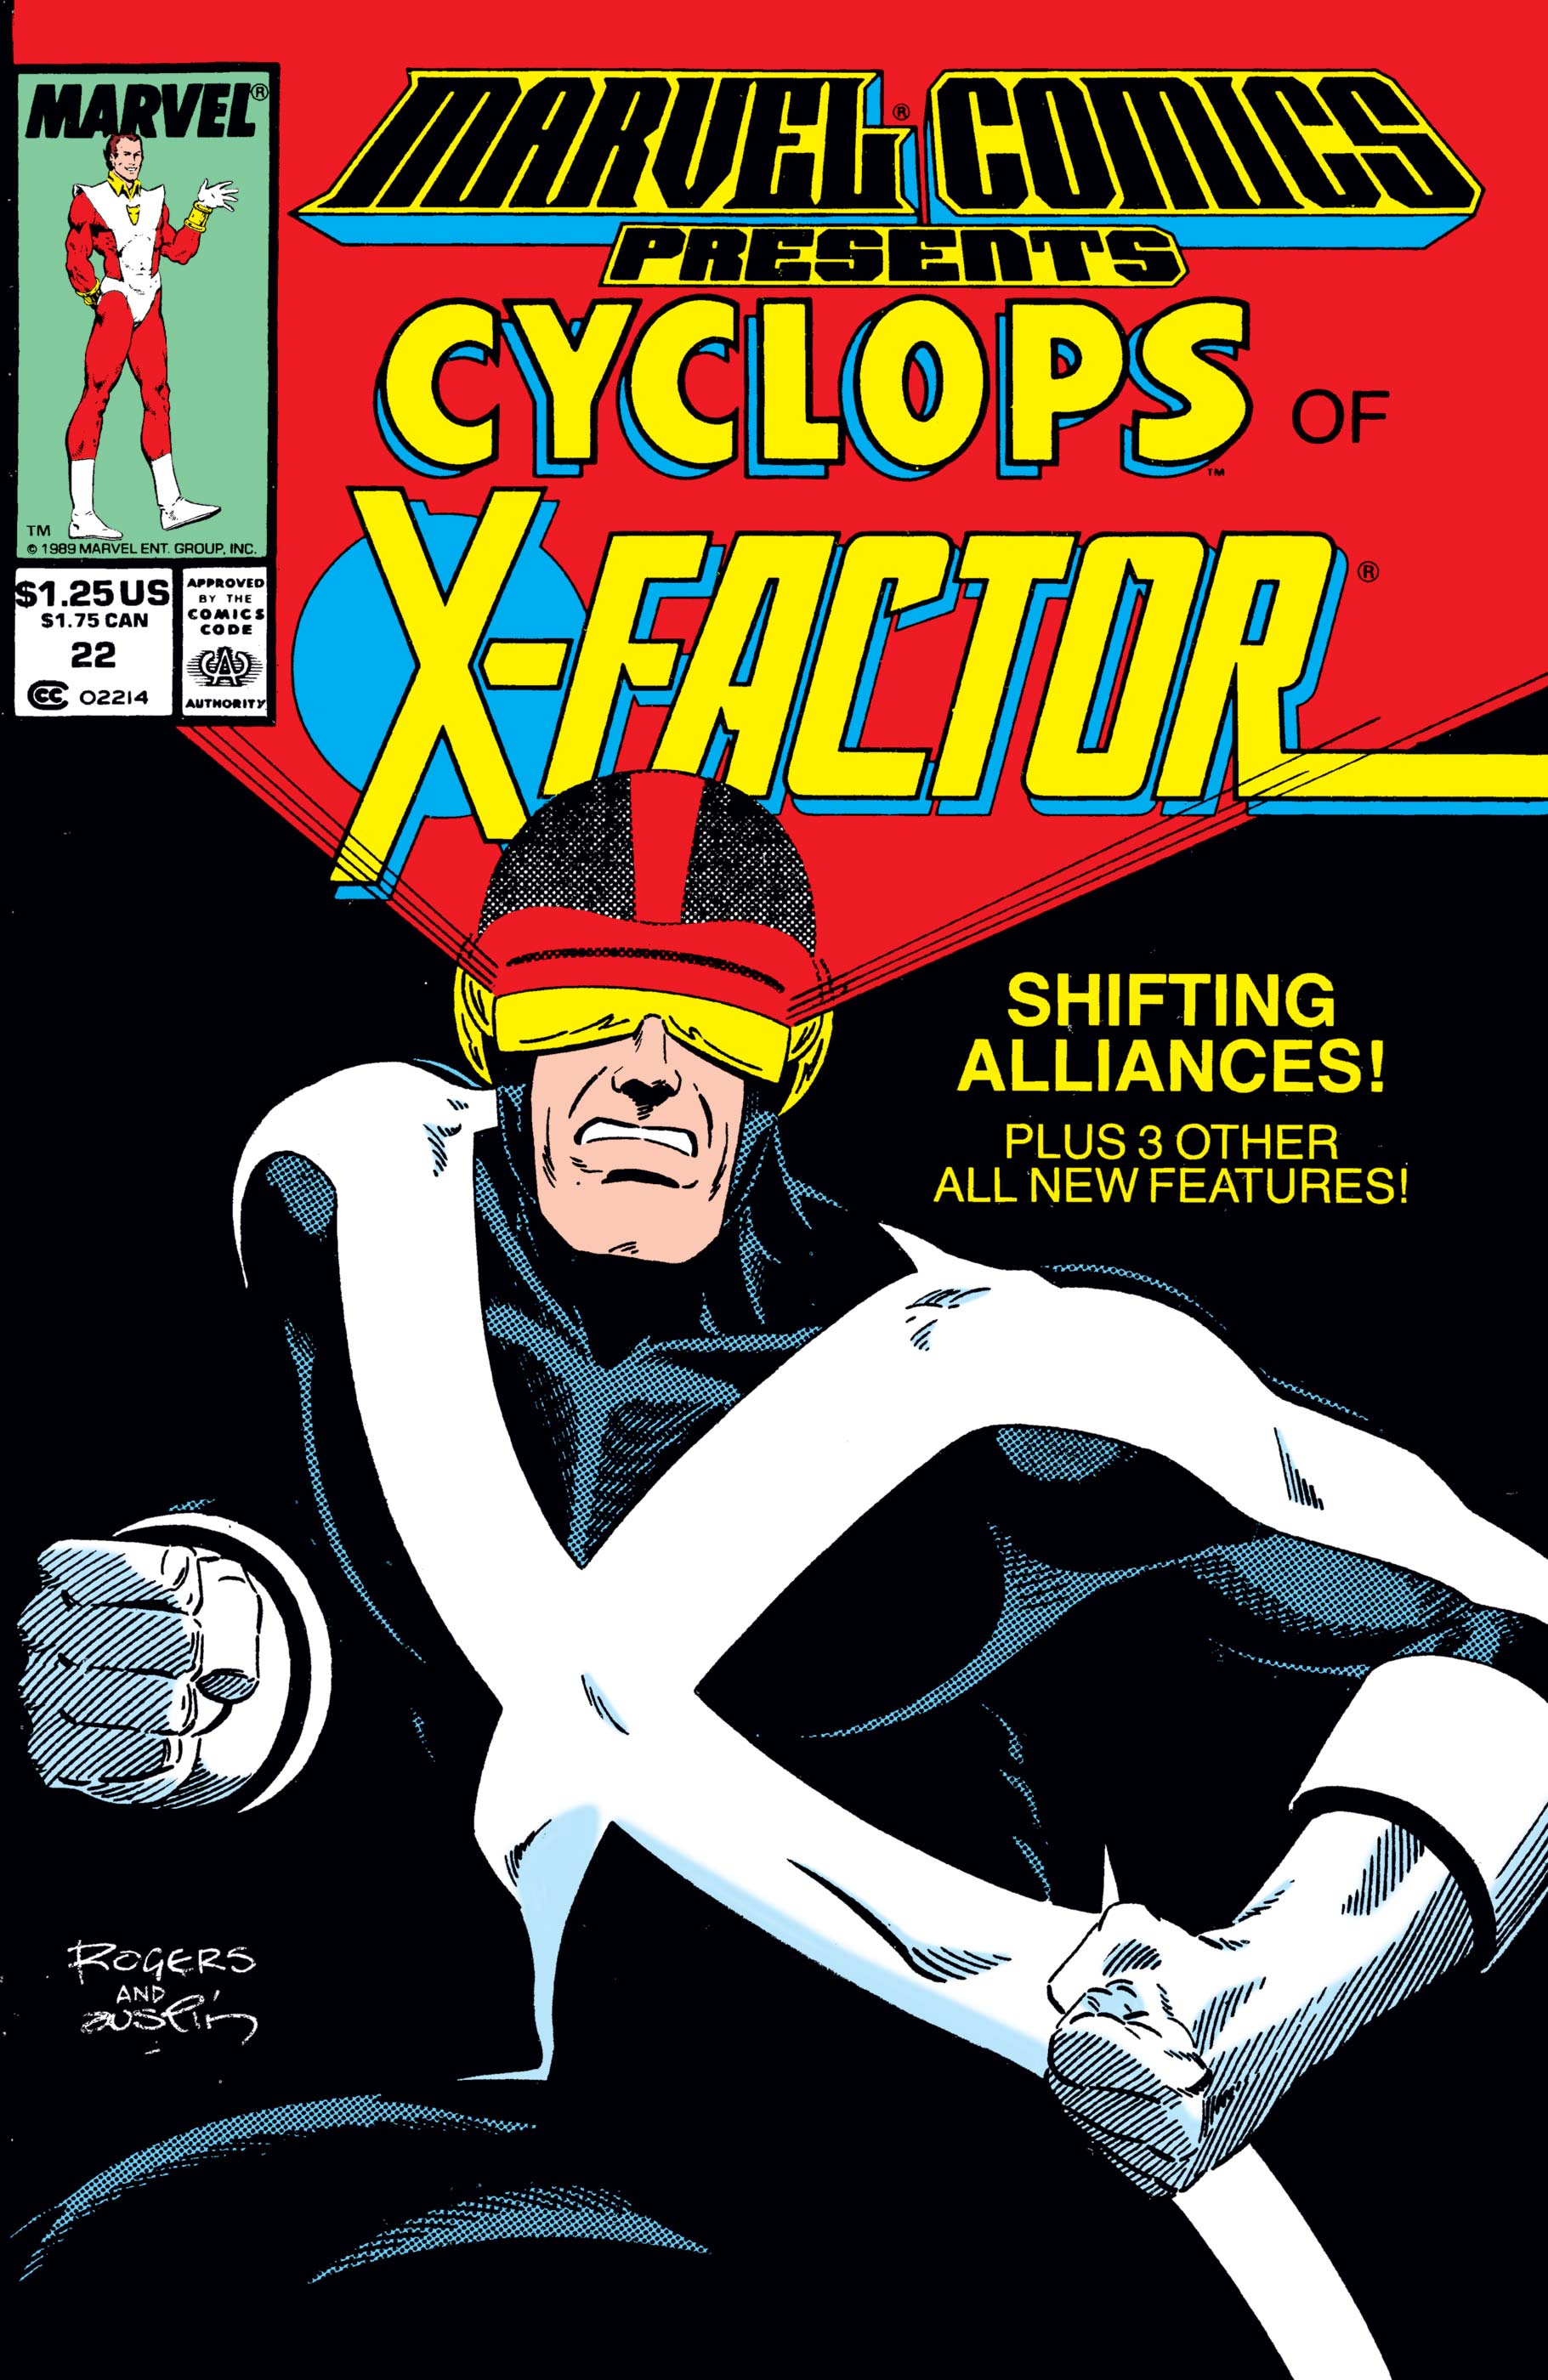 Marvel Comics Presents (1988) #22